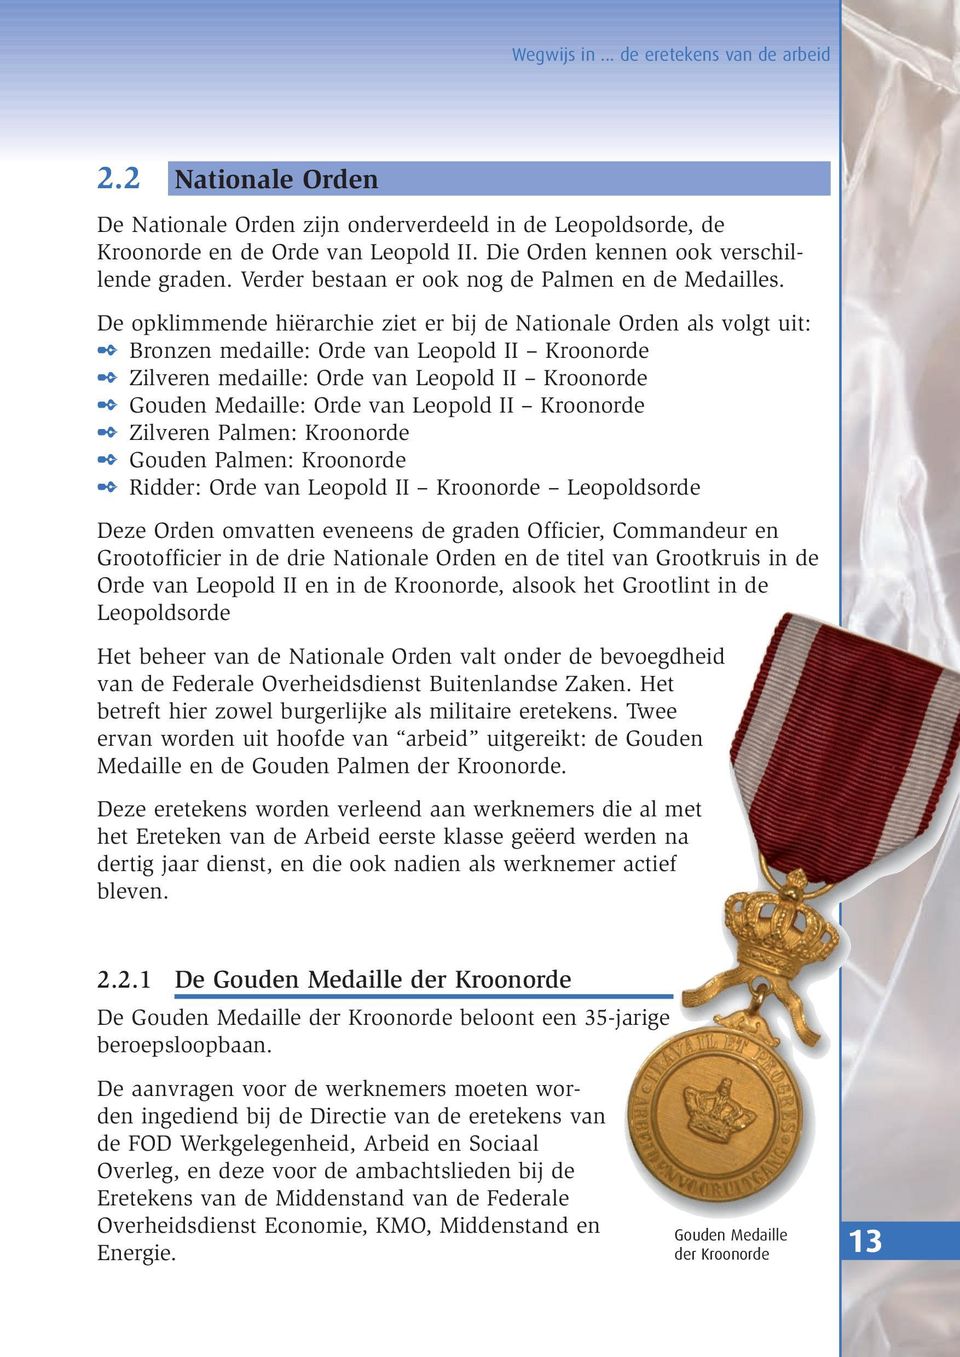 De opklimmende hiërarchie ziet er bij de Nationale Orden als volgt uit: Bronzen medaille: Orde van Leopold II Kroonorde Zilveren medaille: Orde van Leopold II Kroonorde Gouden Medaille: Orde van